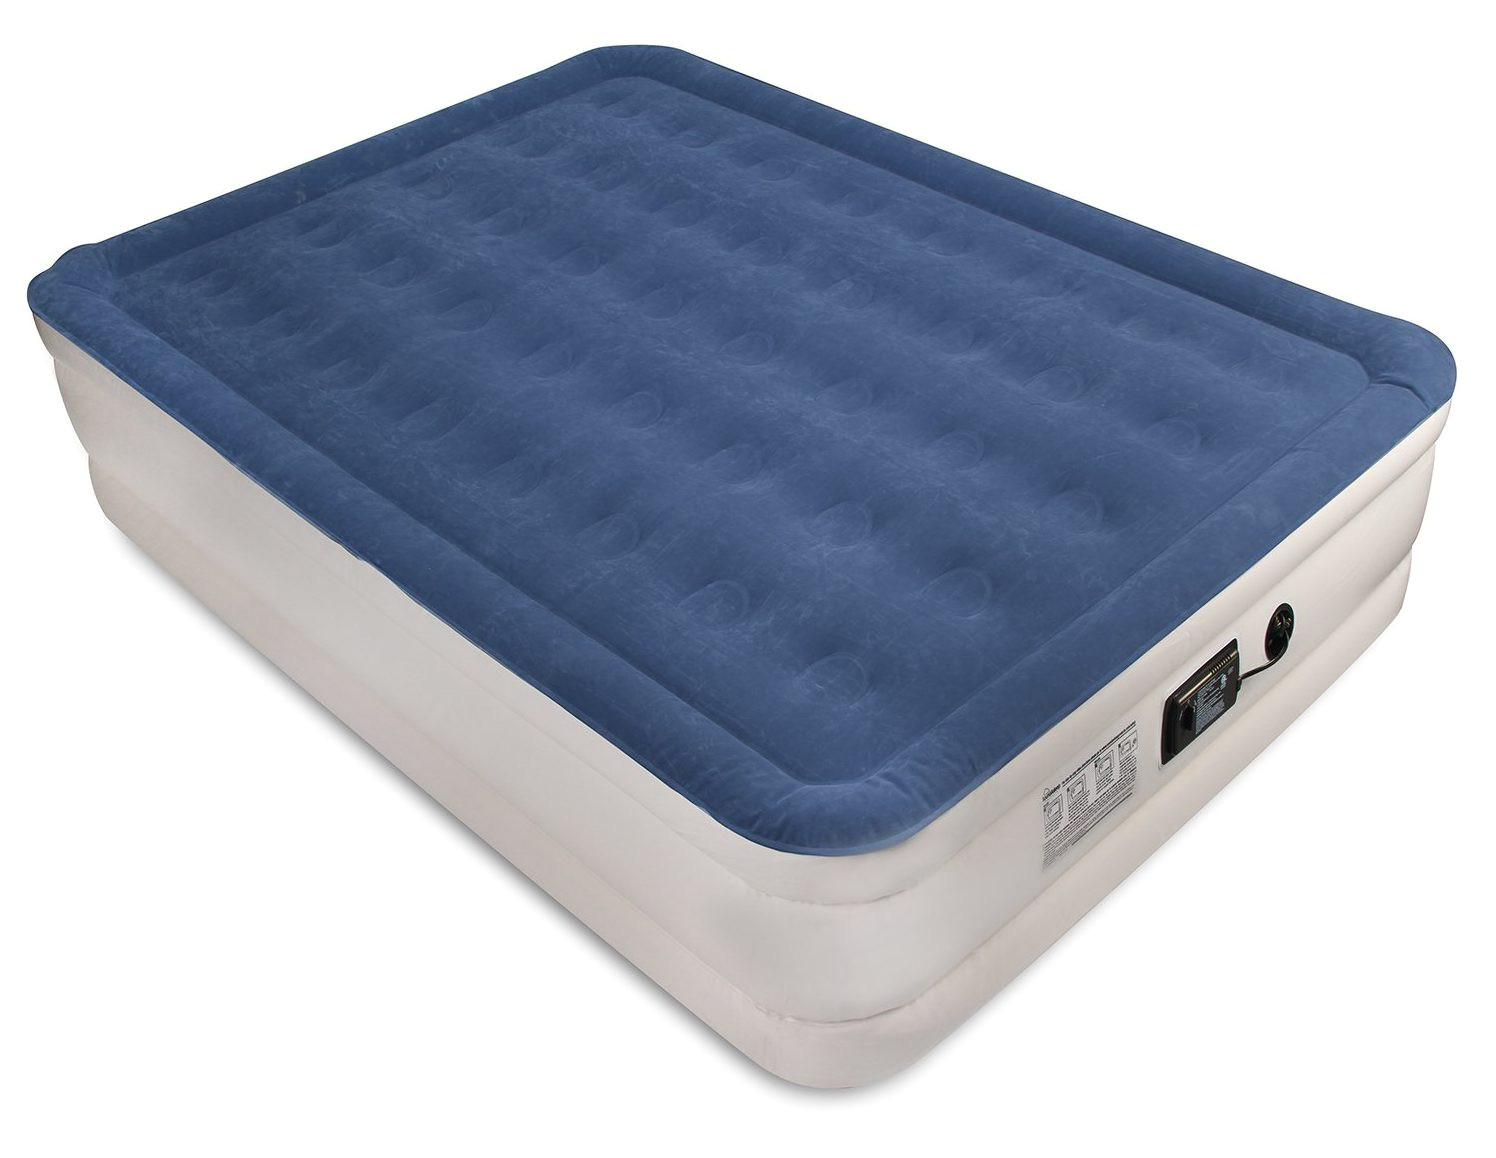 soundasleep dream series air mattress with comfortcoil